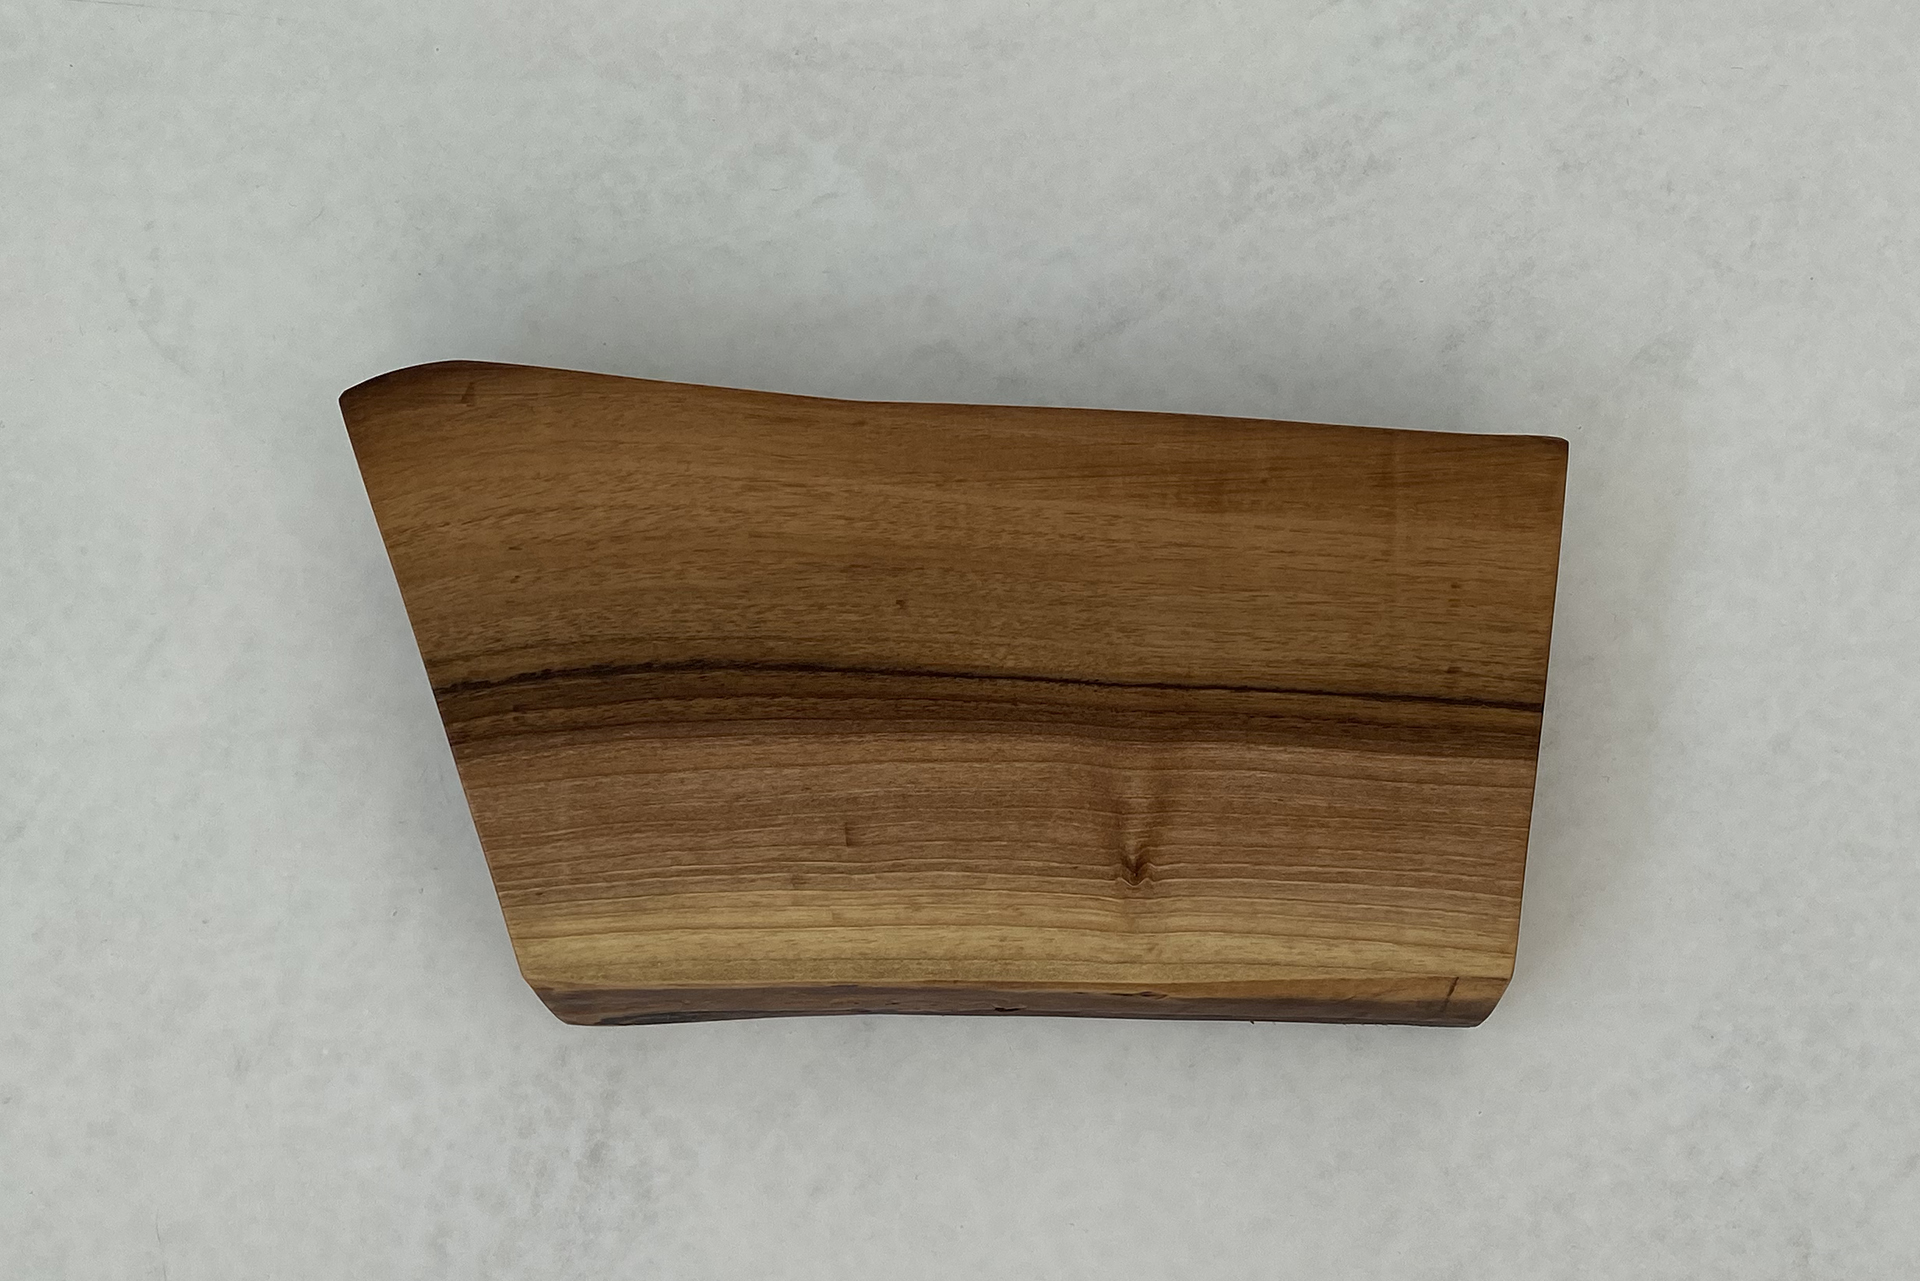 deski do krojenia i serwowania - deska z drewna orzecha włoskiego na tle białego mikrocementu